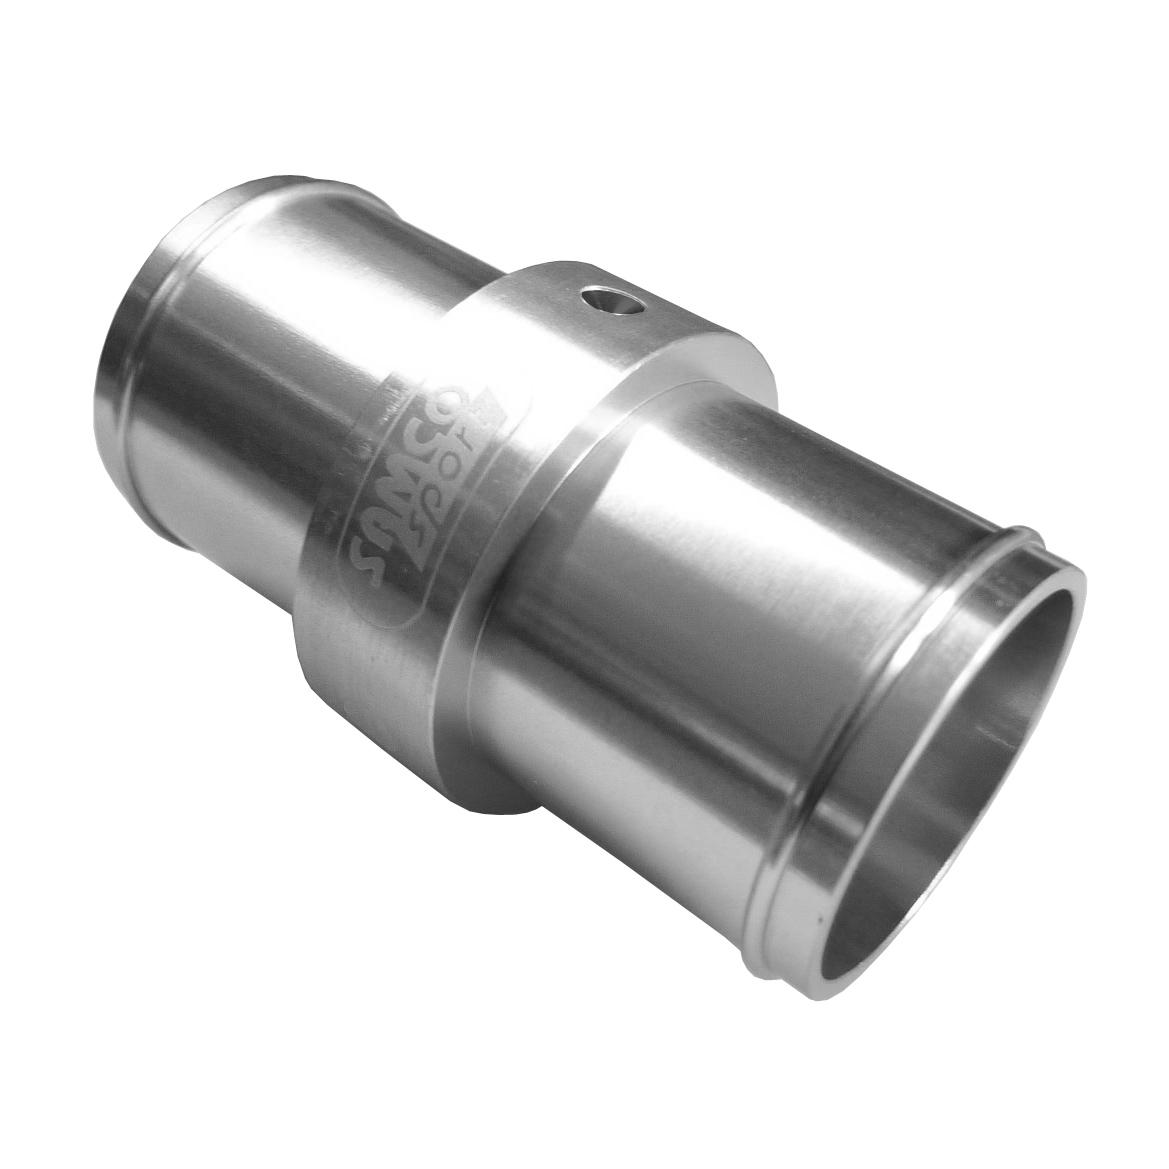 Samco aluminium vattnar med slang den utvändiga diametern för adapter 38mm